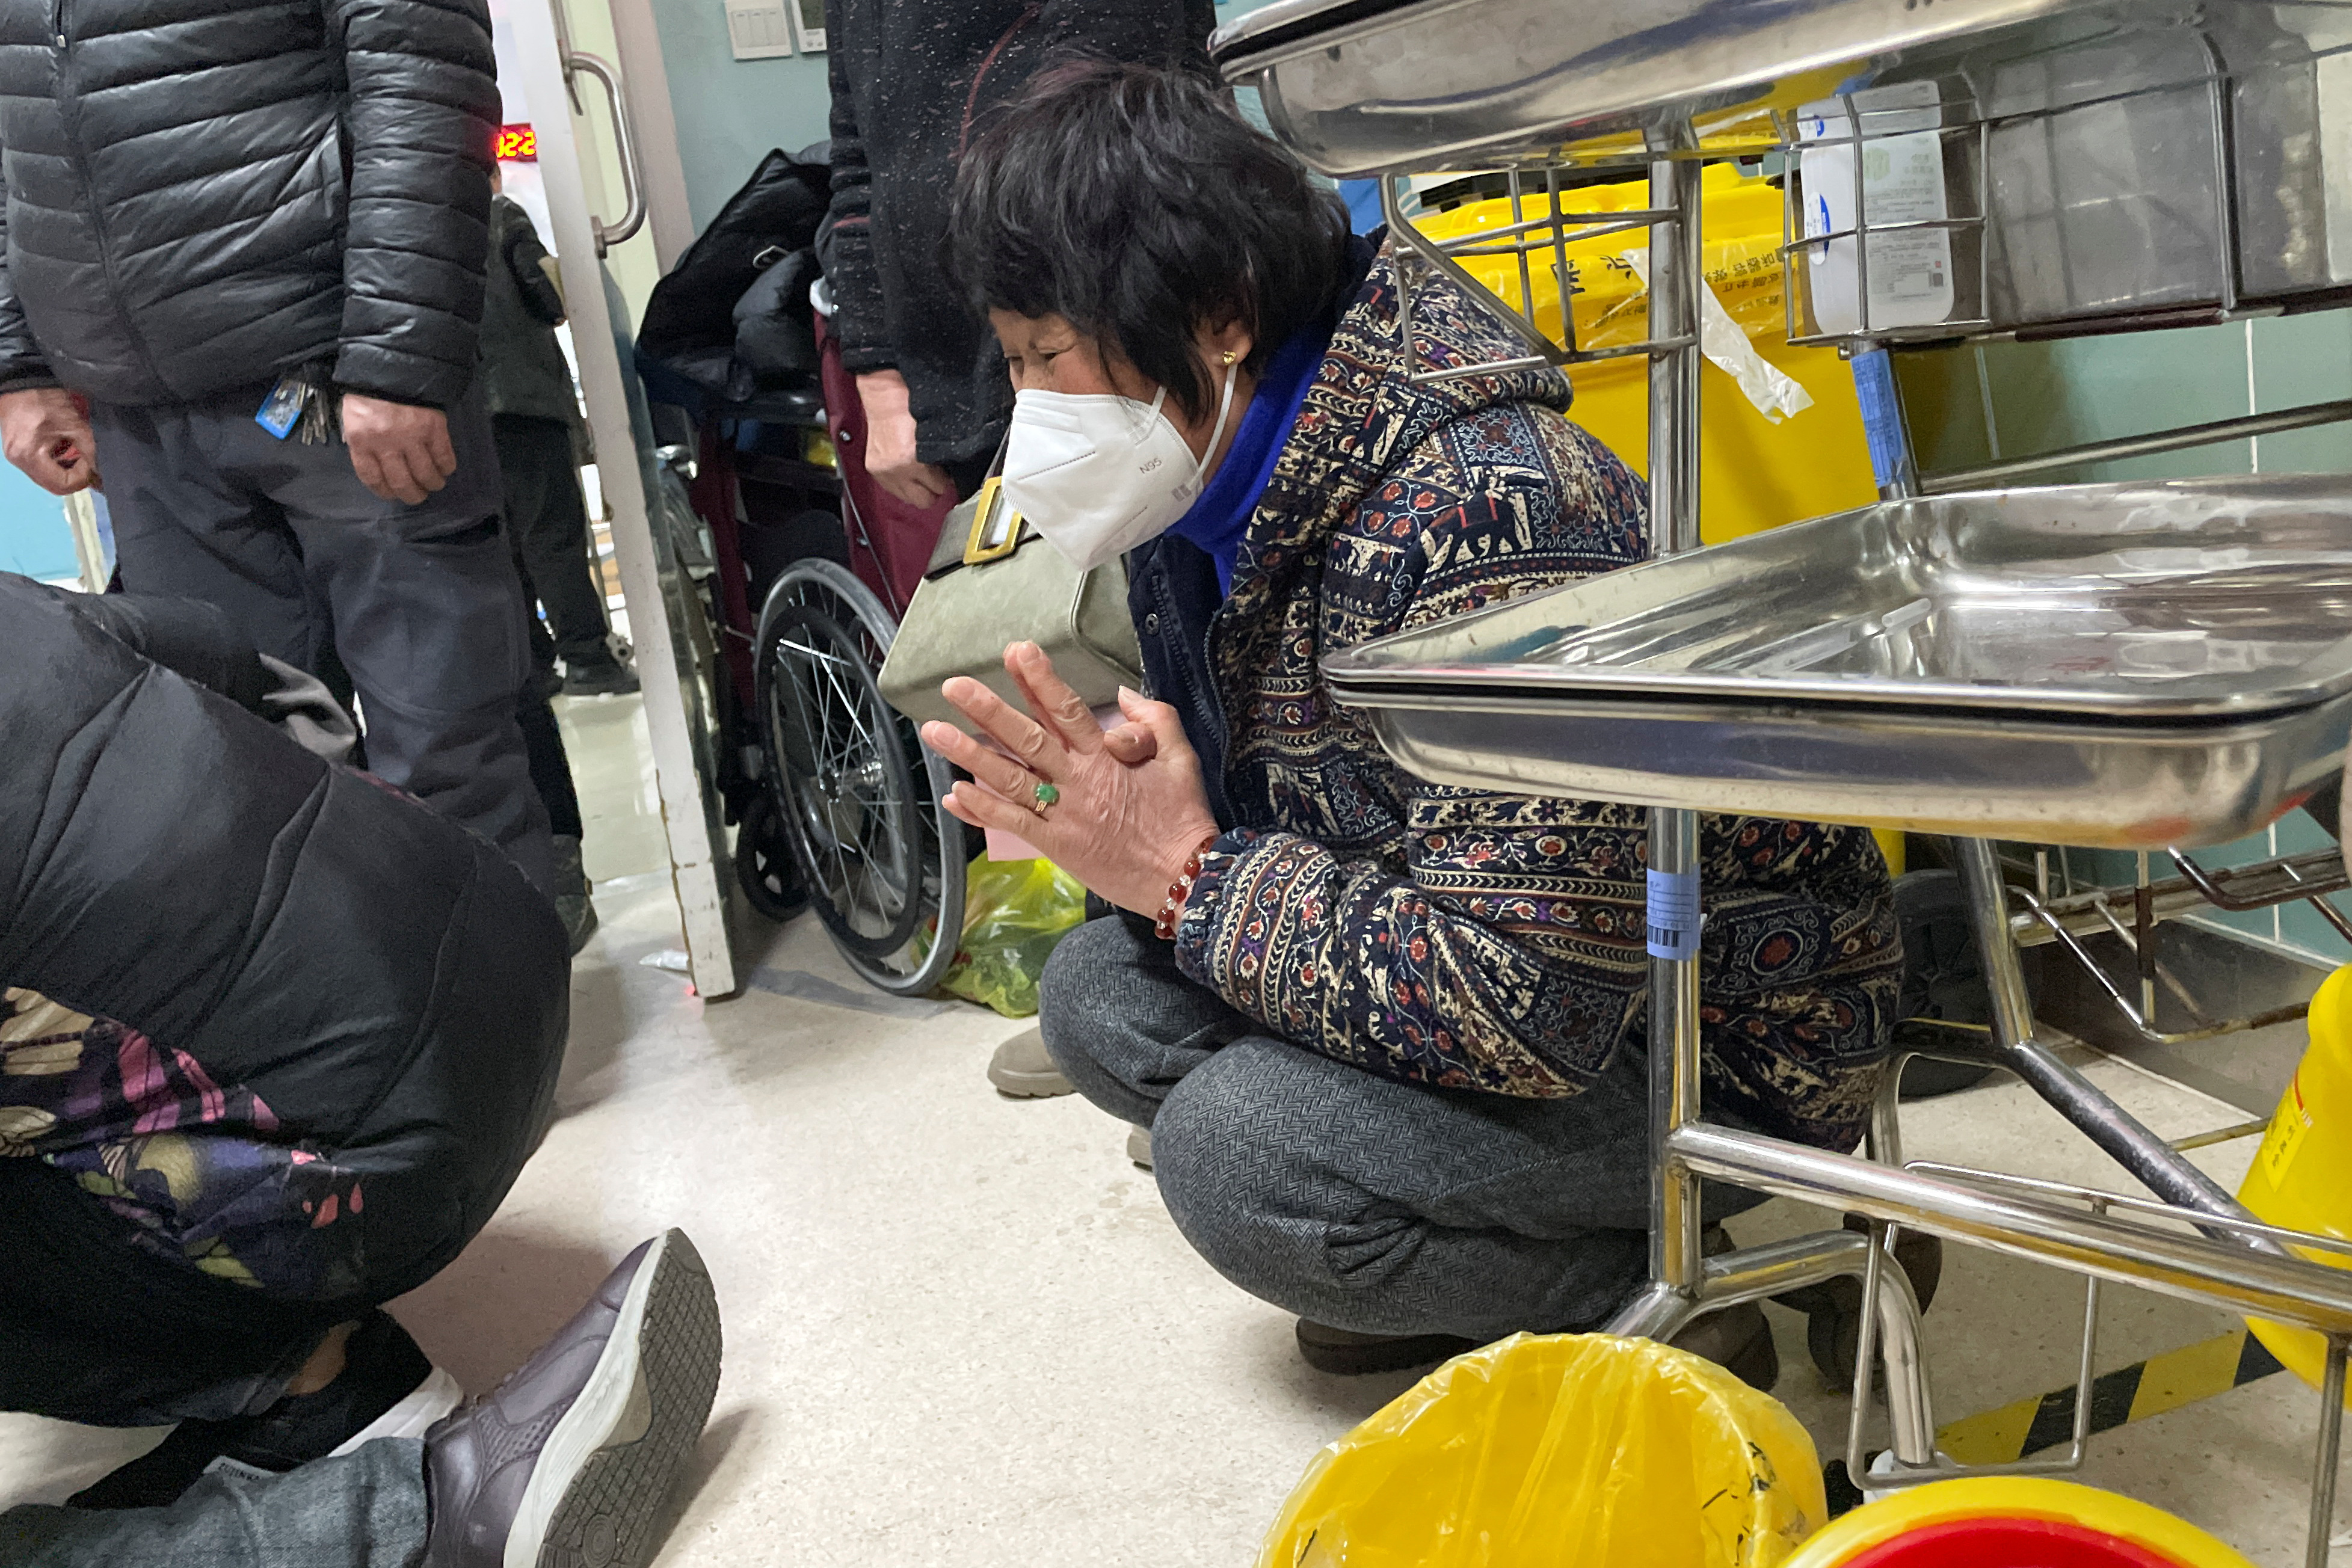 Un pariente reza junto a un hombre que recibe compresiones torácicas a través de un dispositivo de RCP mientras está acostado en el piso en el departamento de emergencias de un hospital, en medio del brote de la enfermedad por coronavirus (COVID-19) en China